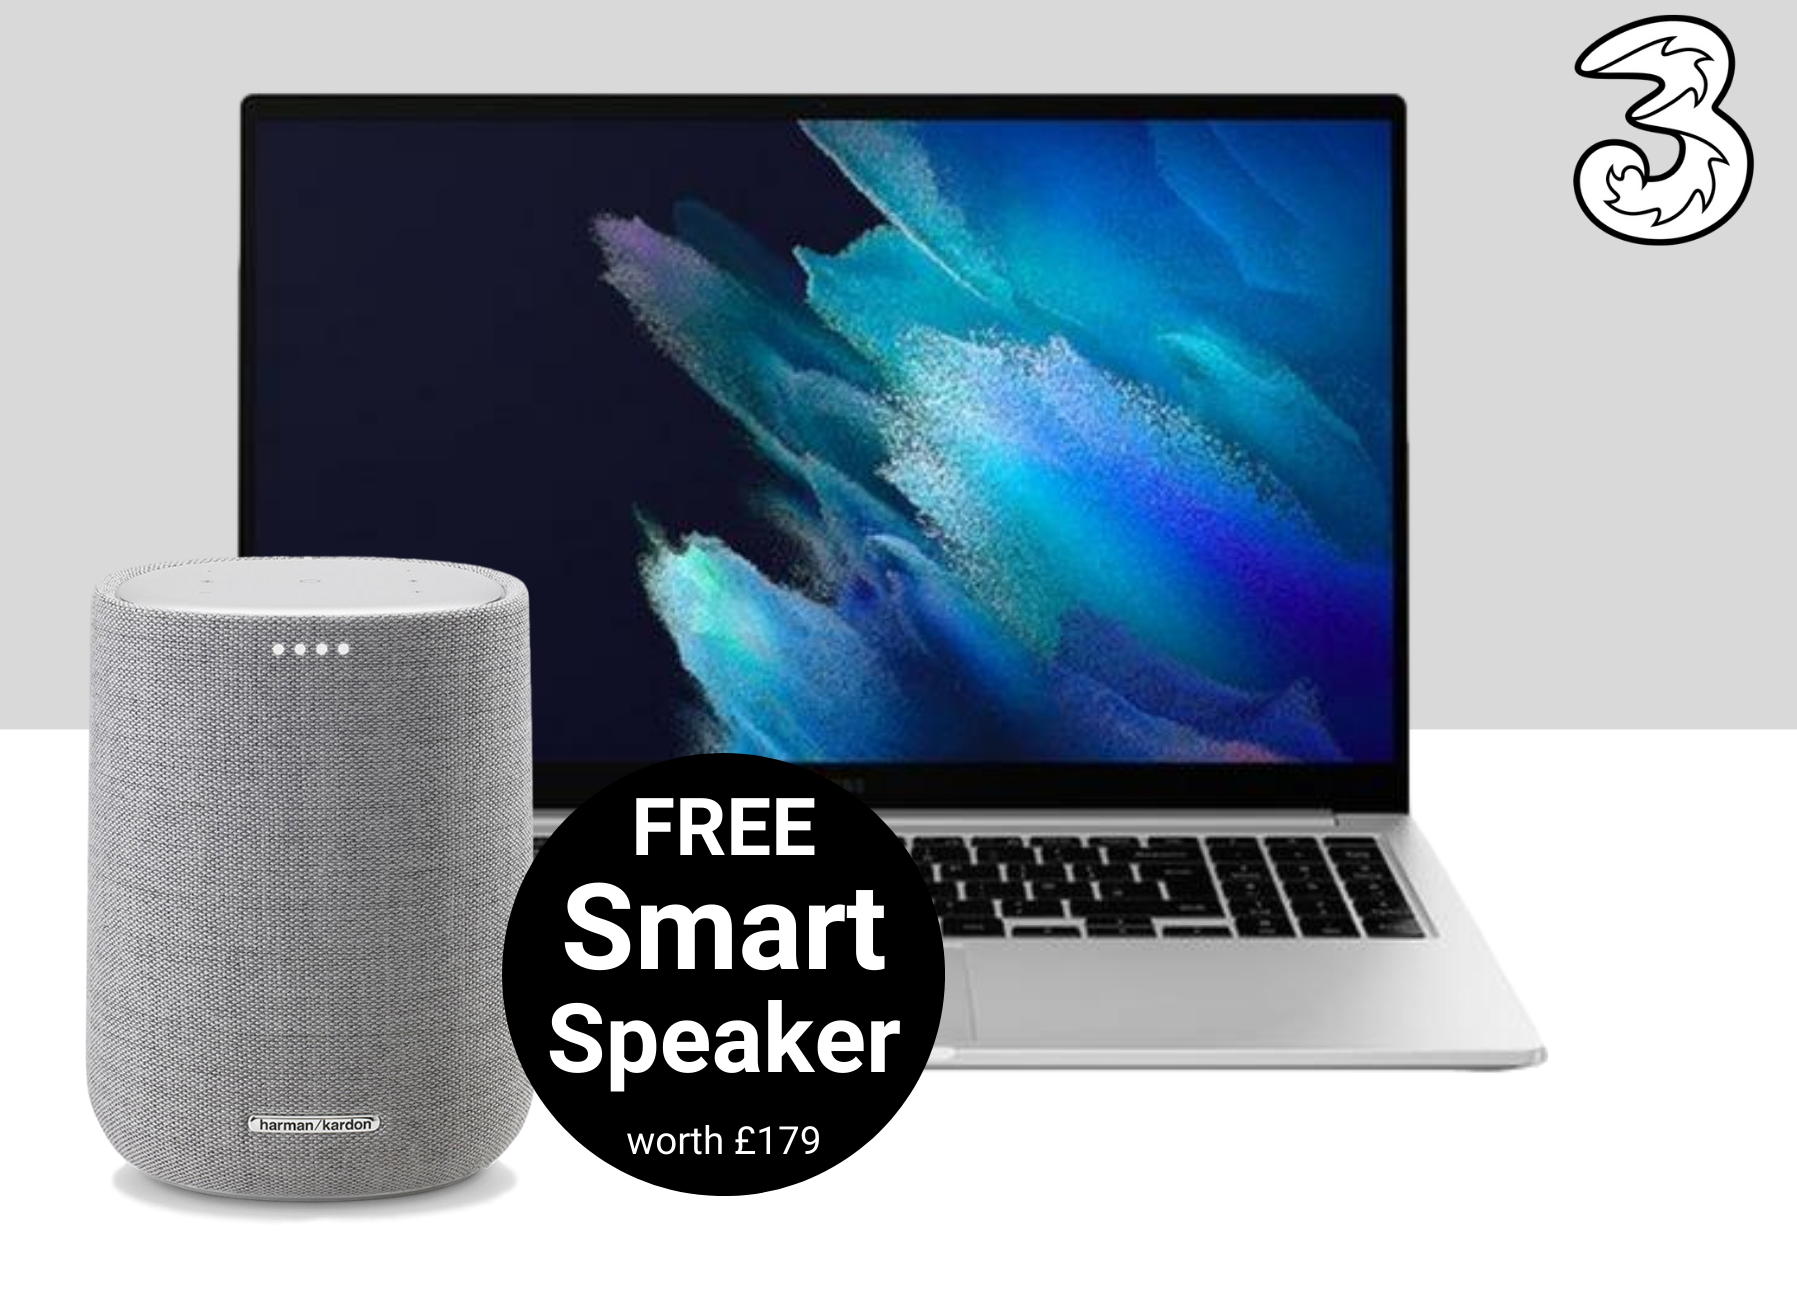 Free Wireless Smart Speaker with Samsung Galaxy Book 4G deals